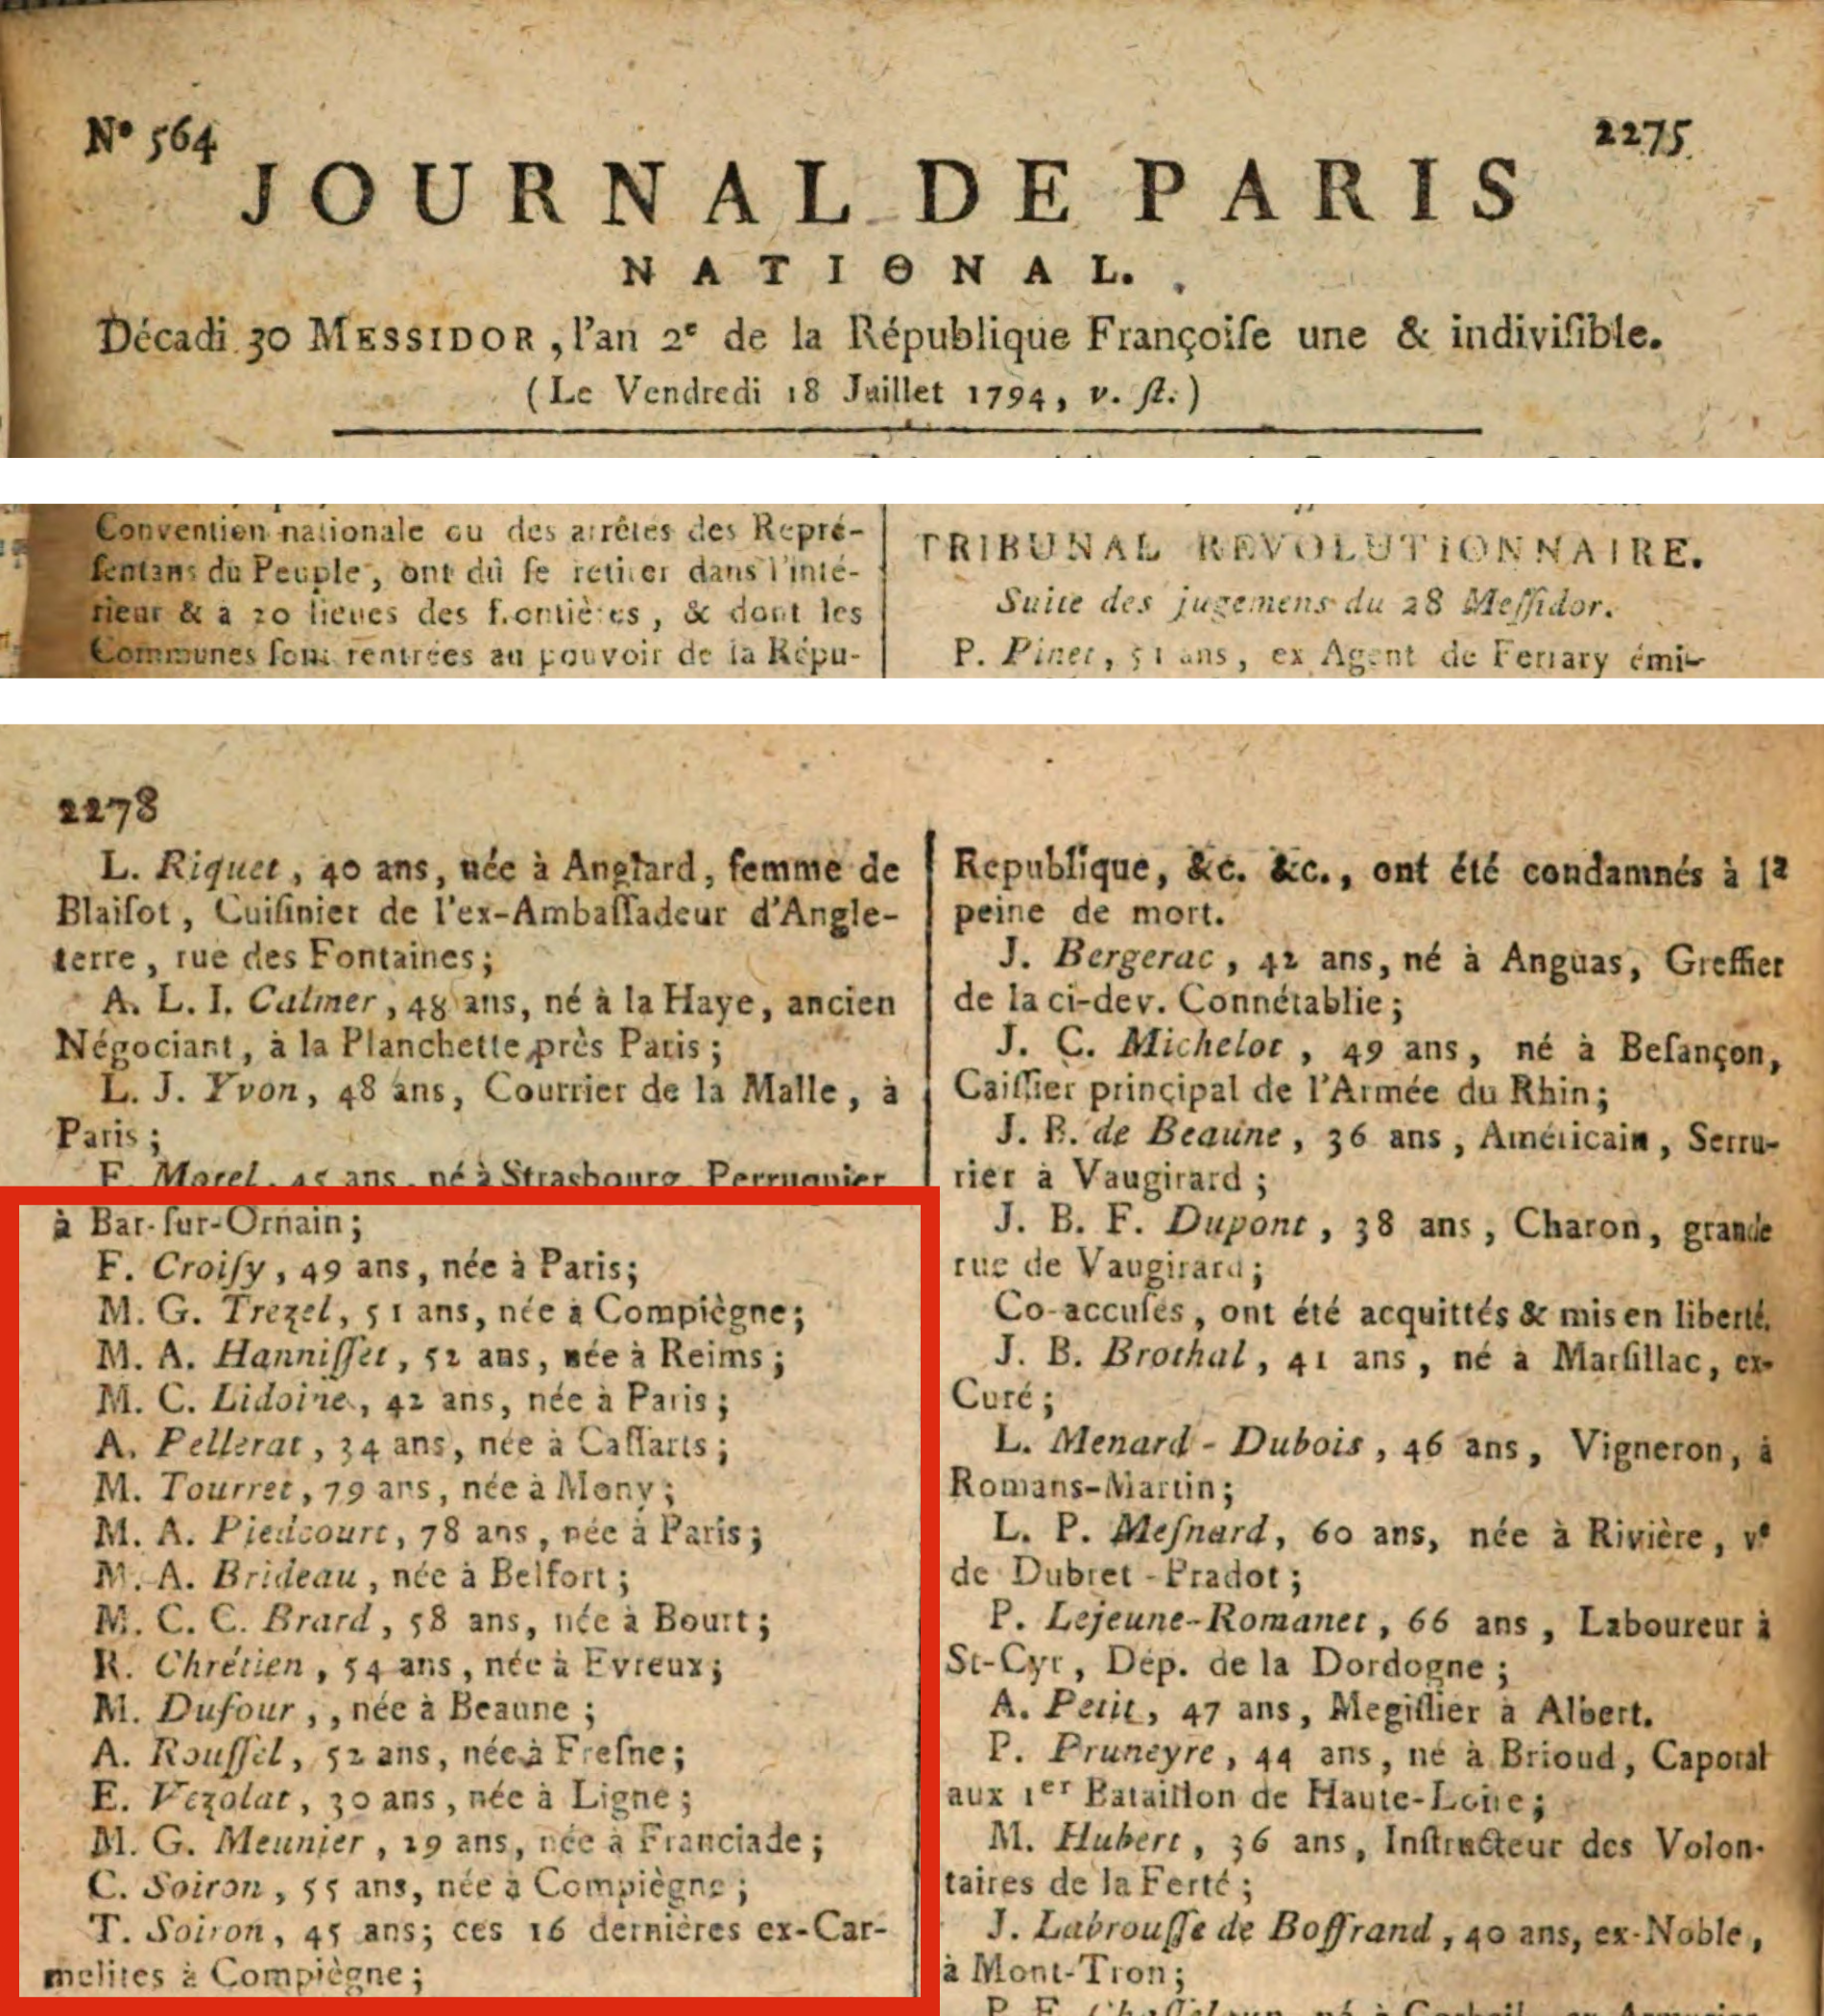 Journal de Paris, 18 July 1794